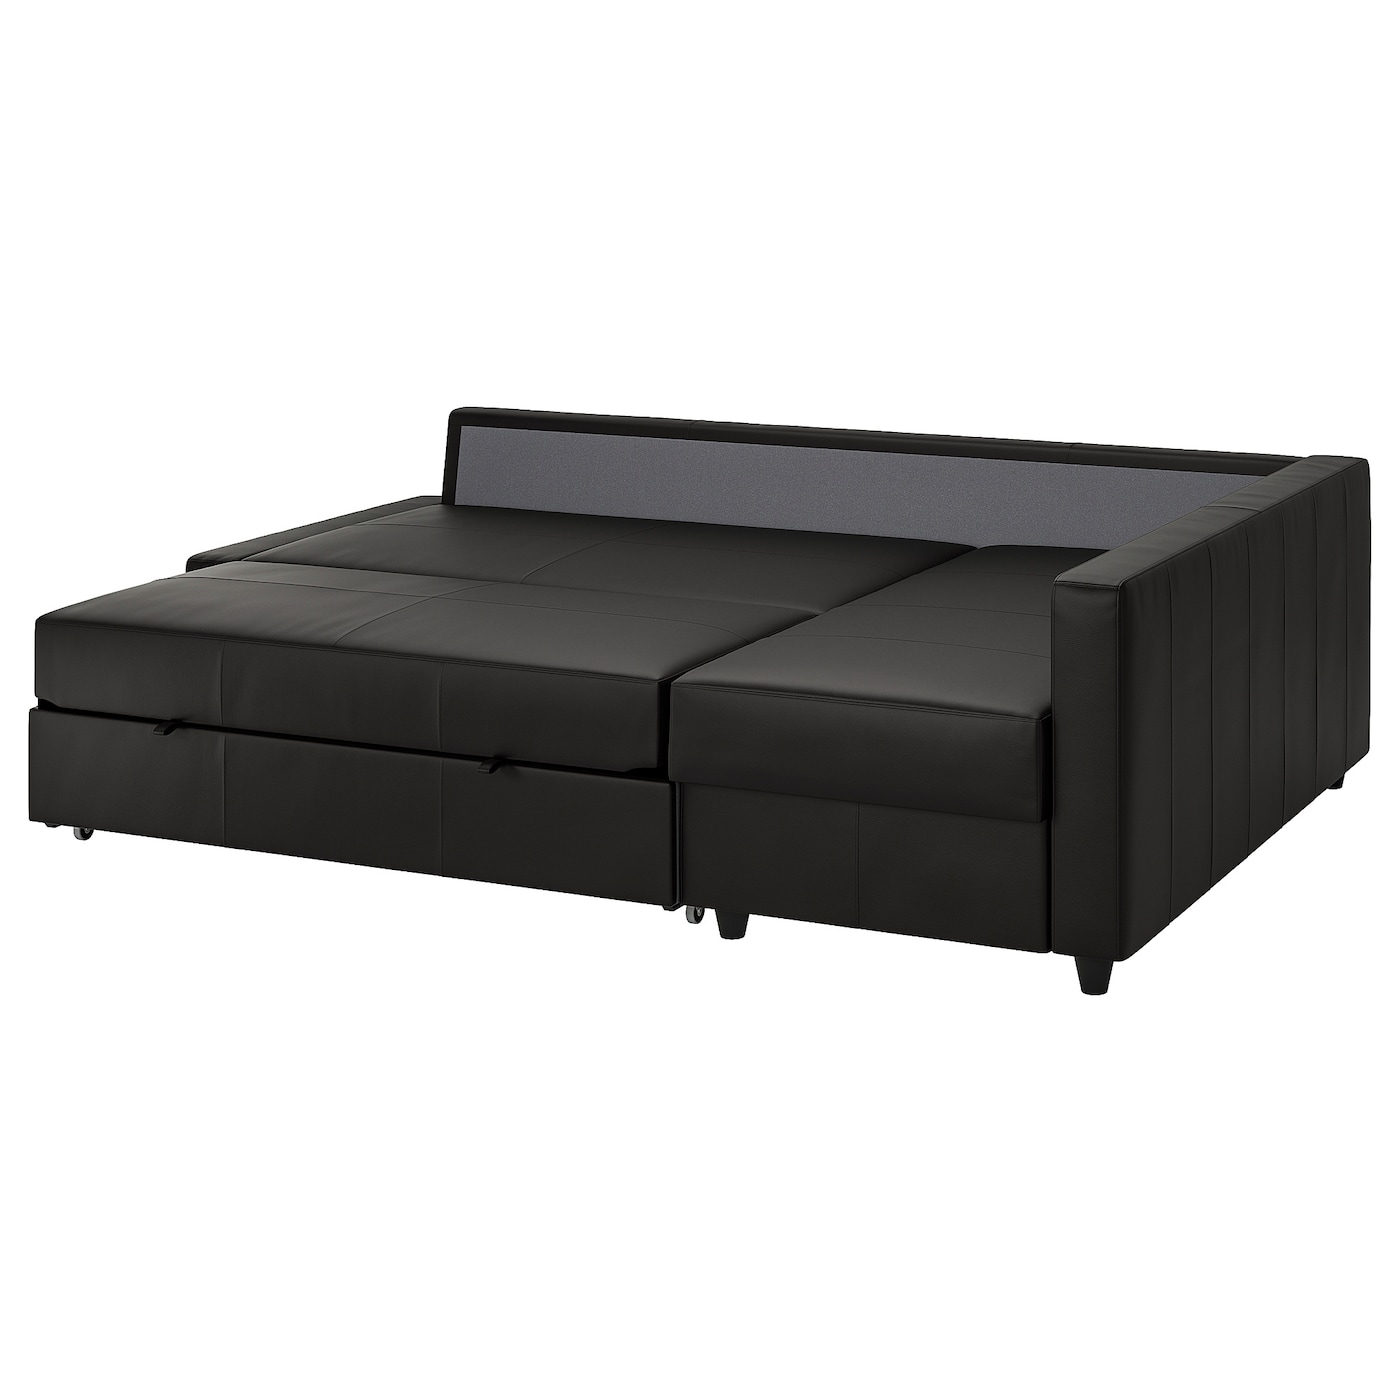 ФРИХЕТЕН Угловой диван-кровать + место для хранения, Бомстад черный FRIHETEN IKEA диван кровать дилан тд 422